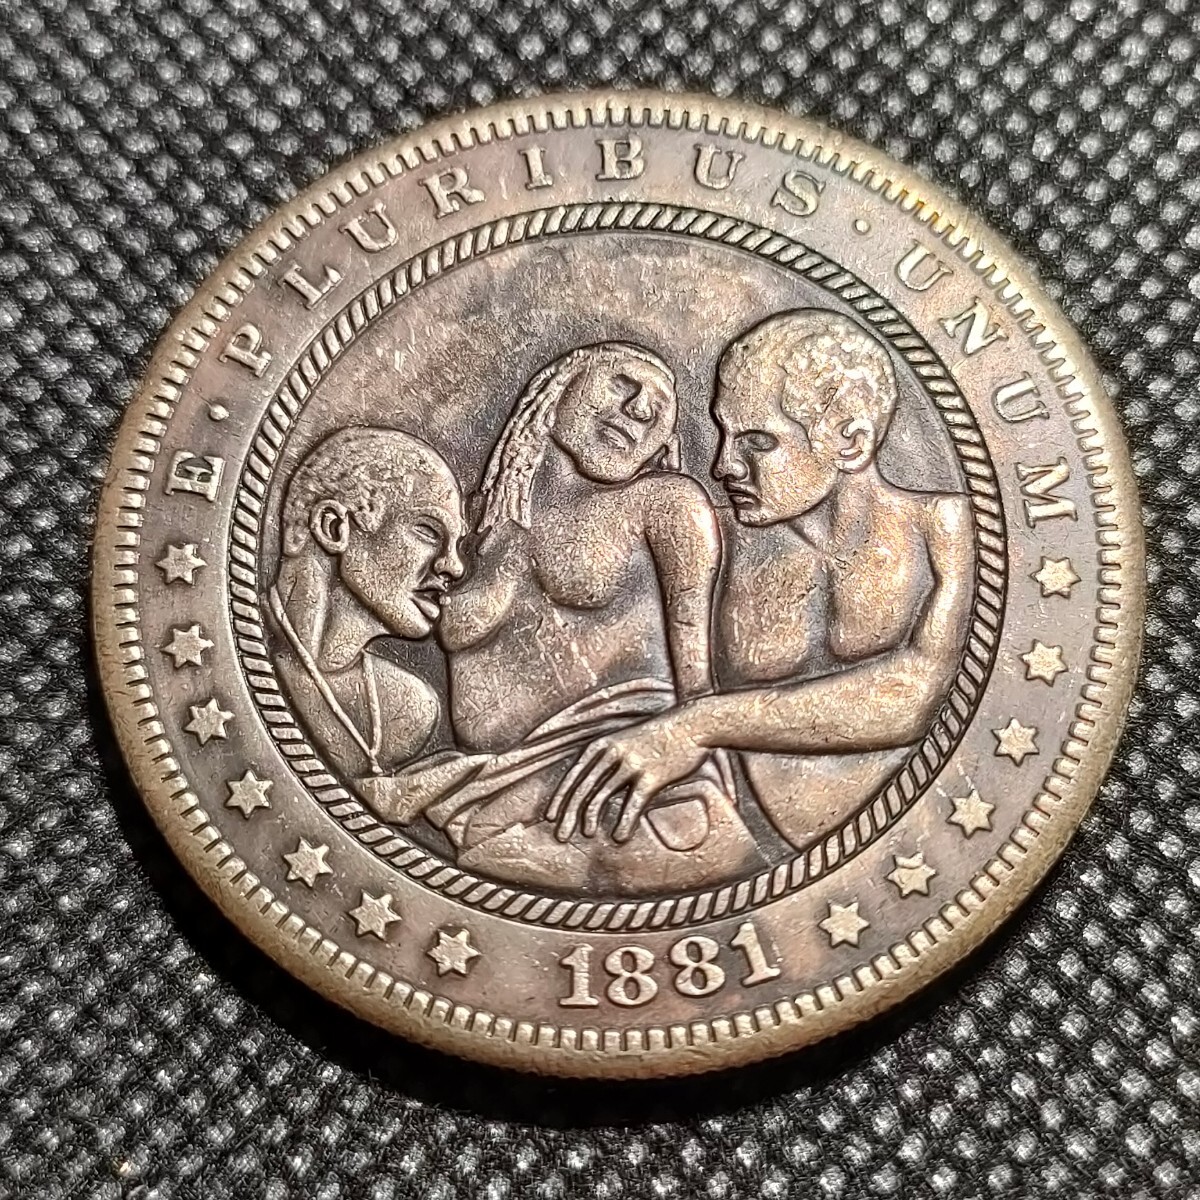 6820 アメリカ古銭 ルンペン 約38mm イーグル チャレンジコイン ゴルフマーカー コイン アンティーク ホーボーの画像1